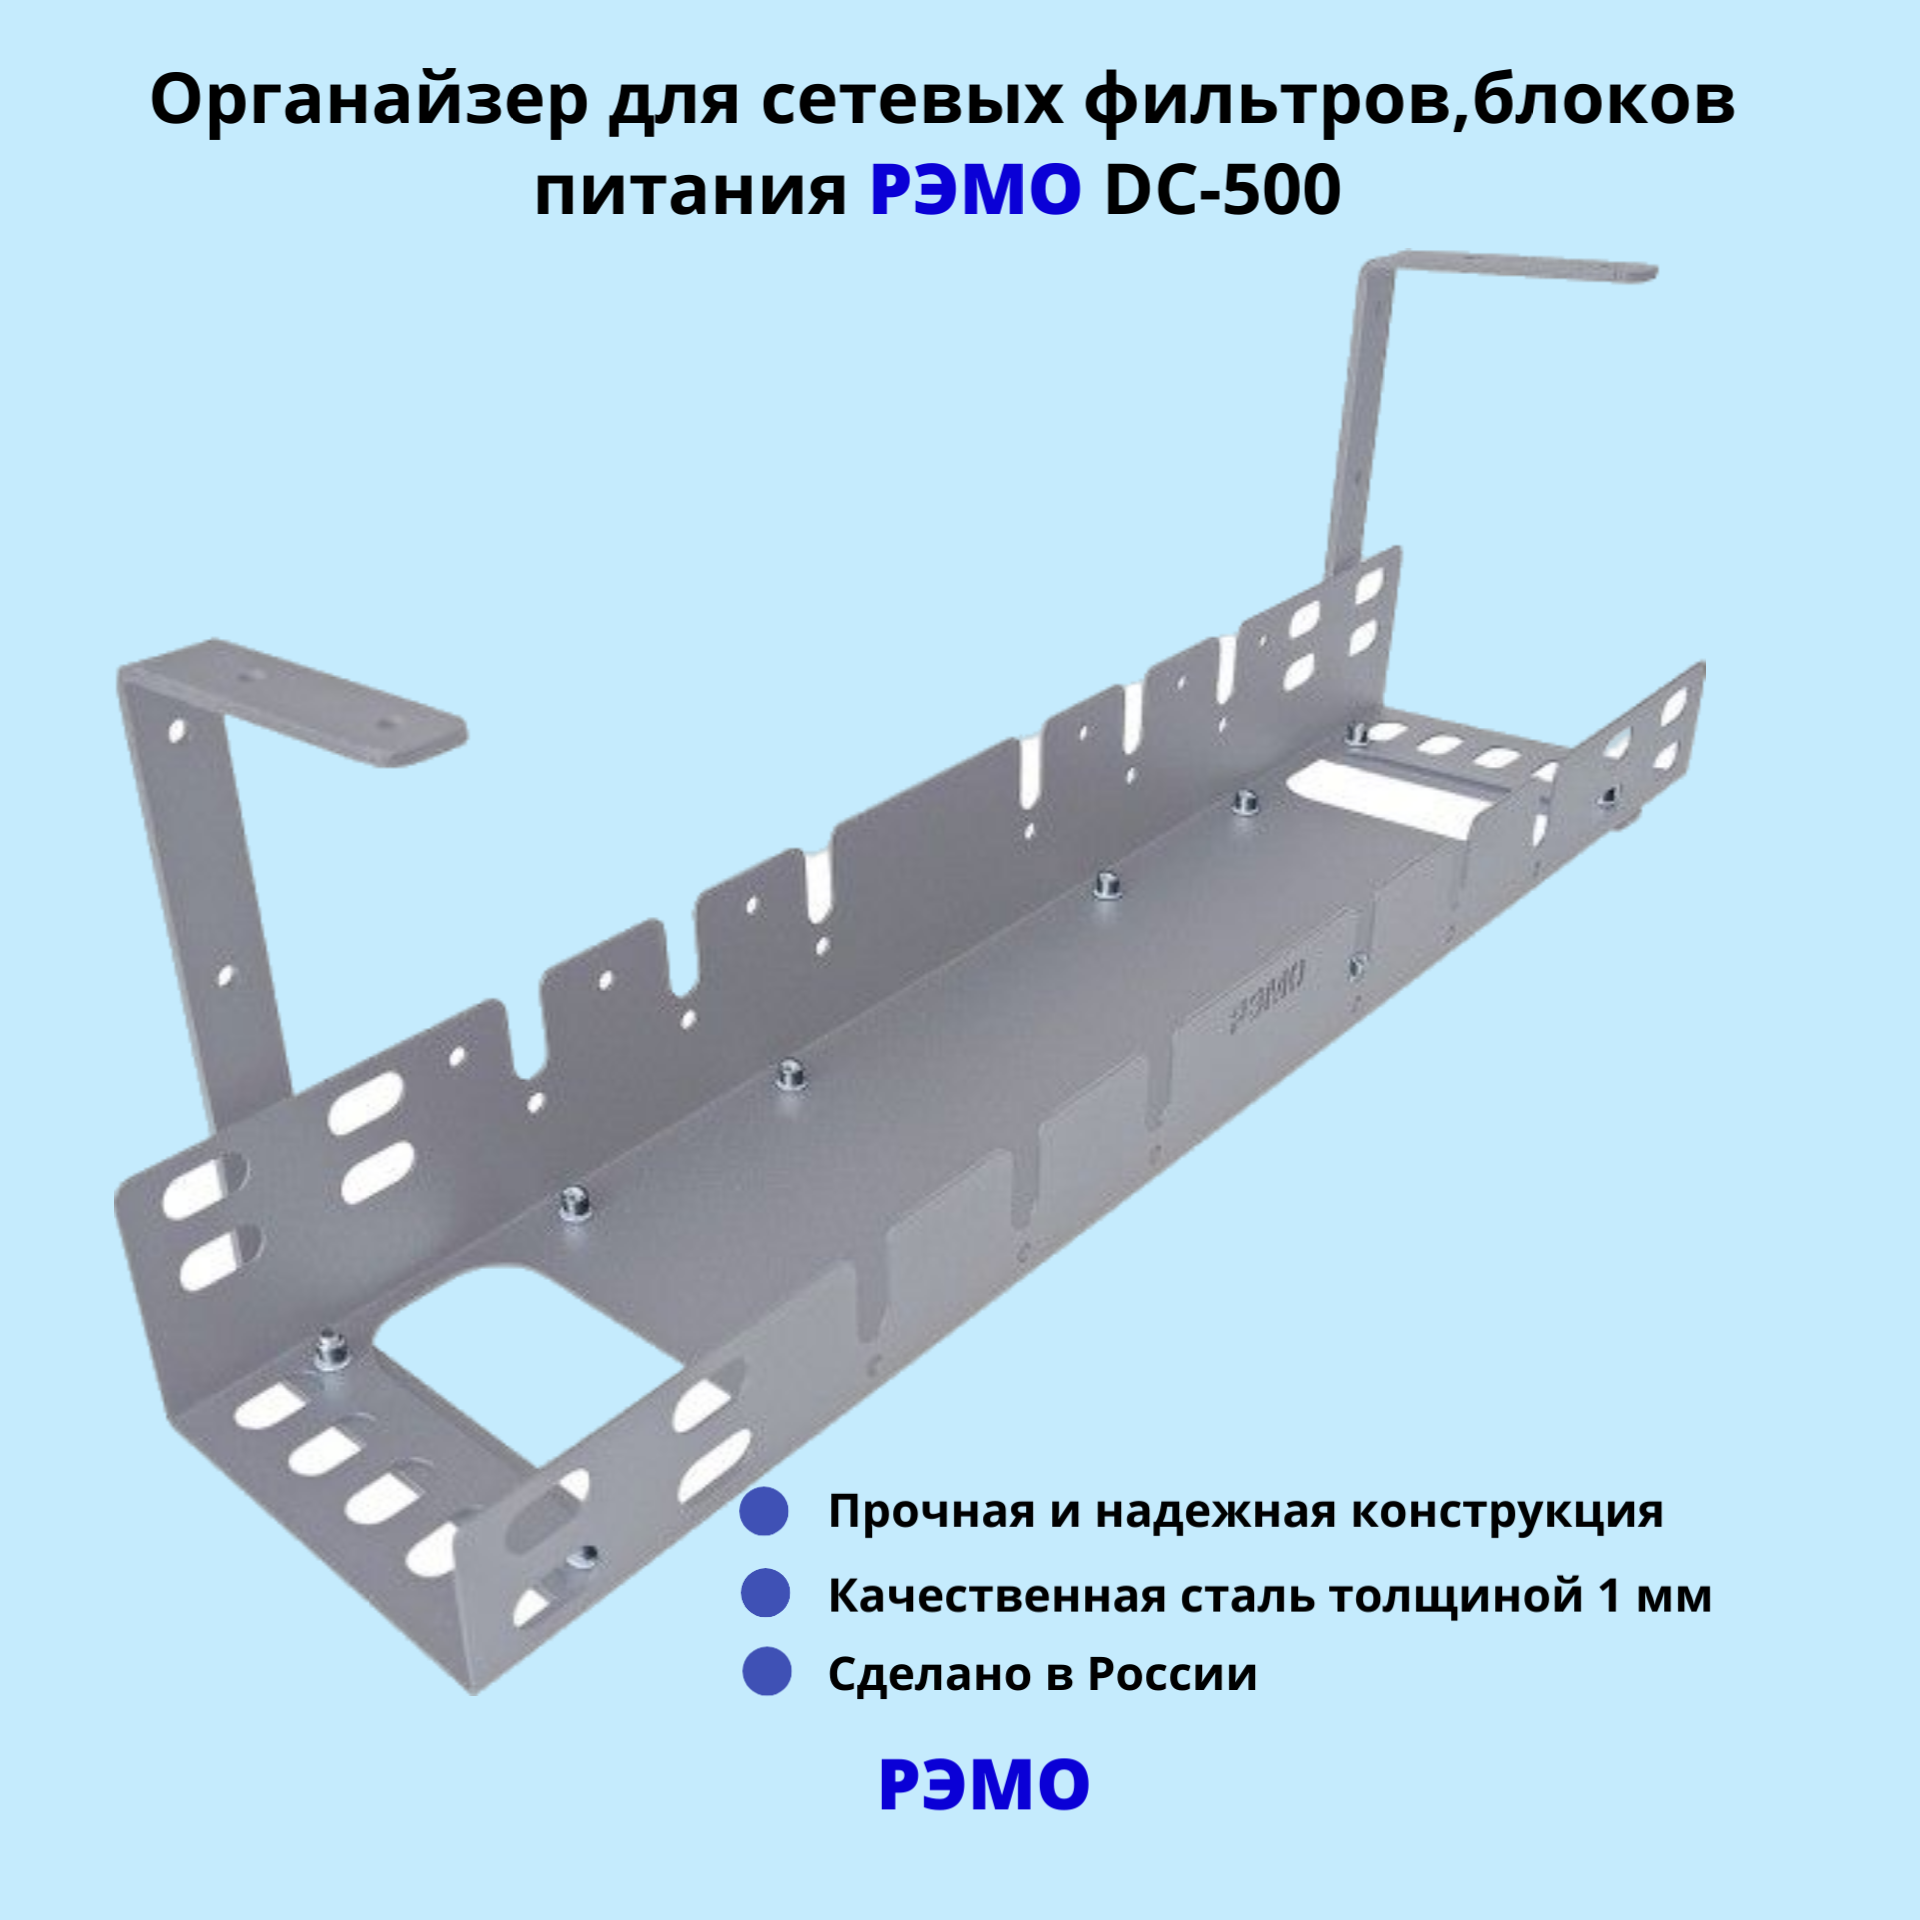 Кабельный органайзер для сетевых фильтров, блоков питания РЭМО DC-500, серый